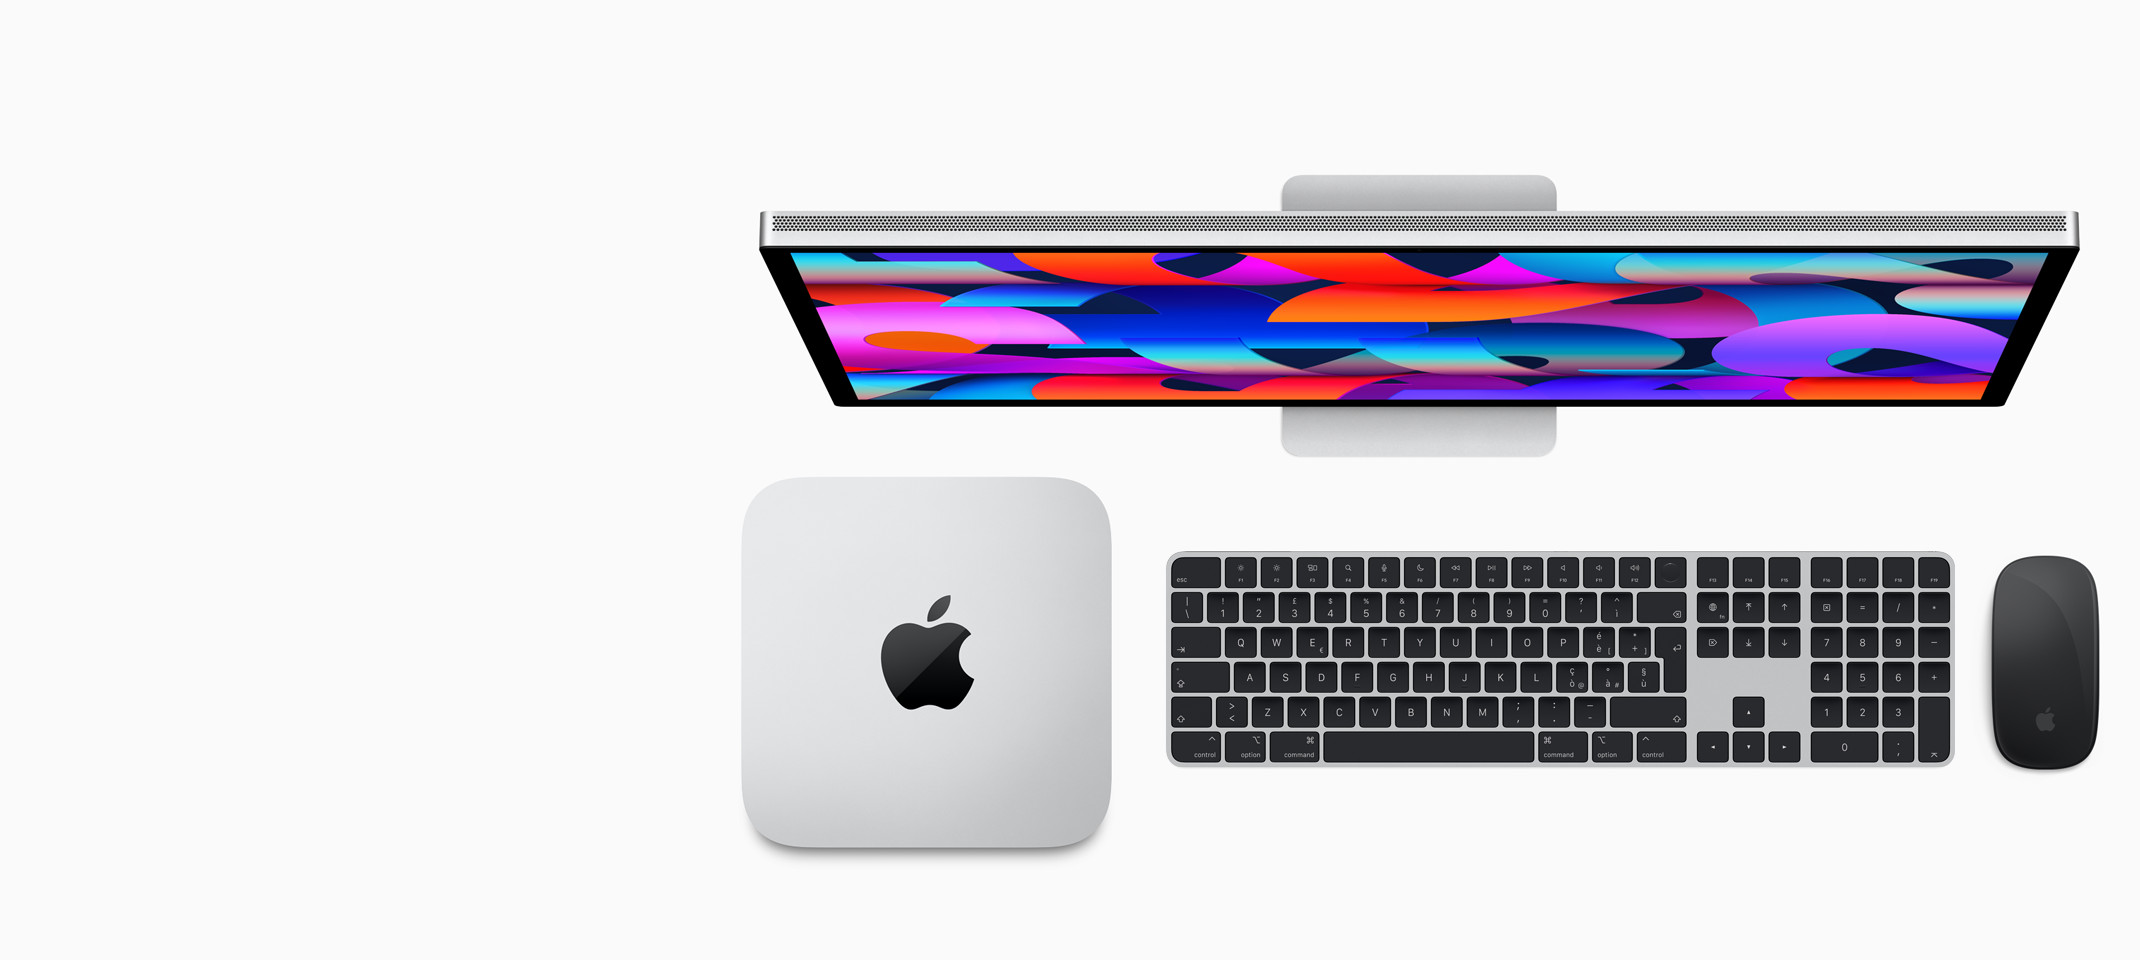 Studio Display, Mac Studio, Magic Keyboard con Touch ID e tastierino numerico, Magic Mouse